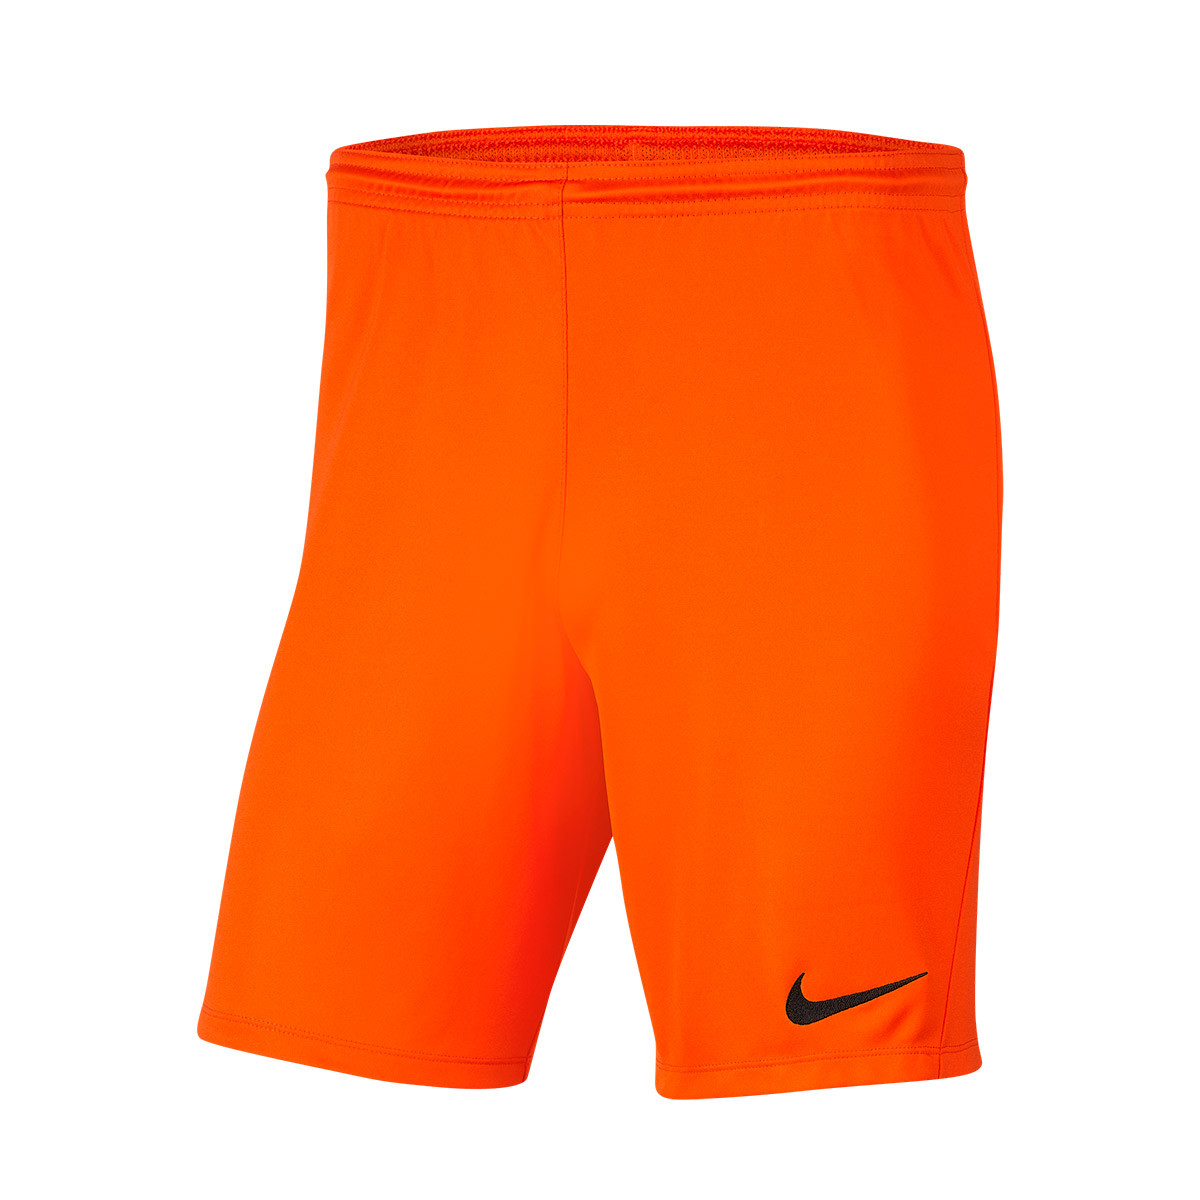 black and orange nike shorts